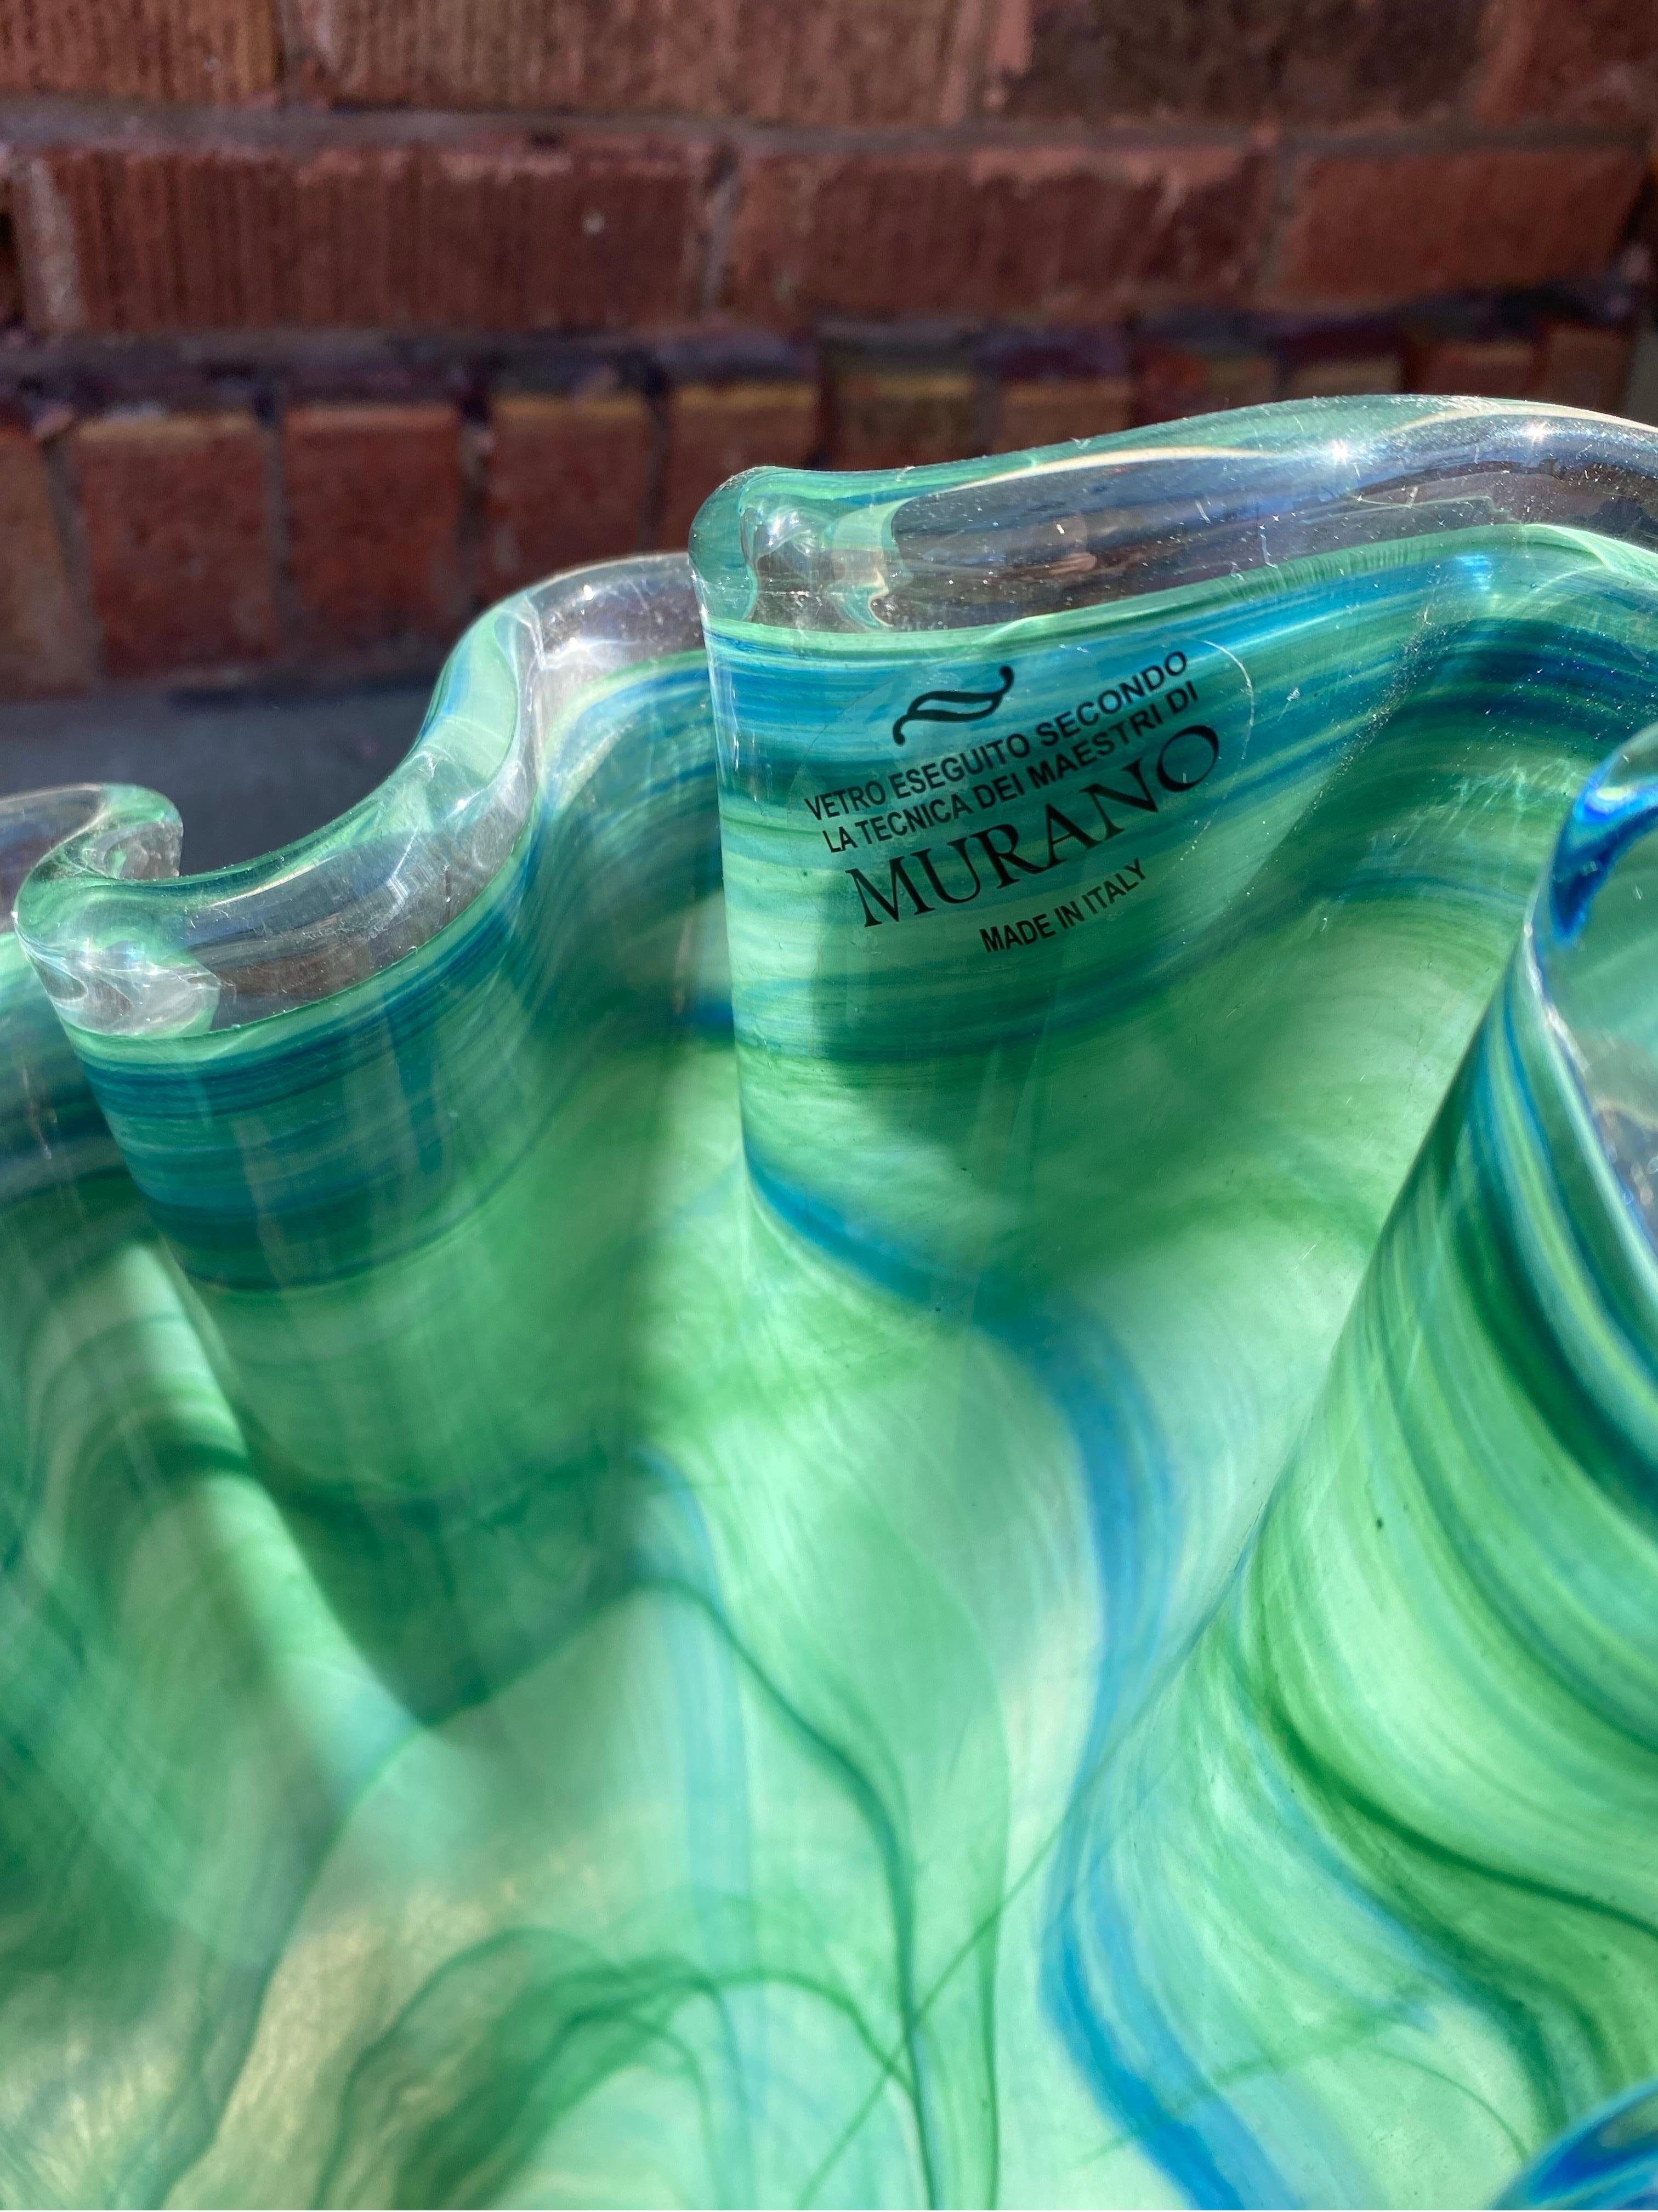 Vintage Italienisch Grün Murano Glas Vase 

Diese gewellte Glasvase hat blaue und dunkelgrüne Streifen auf einem hellgrünen Farbfeld. Es enthält ein Label des Herstellers für Murano.

CIRCA Mitte 20. Jahrhundert

H 16